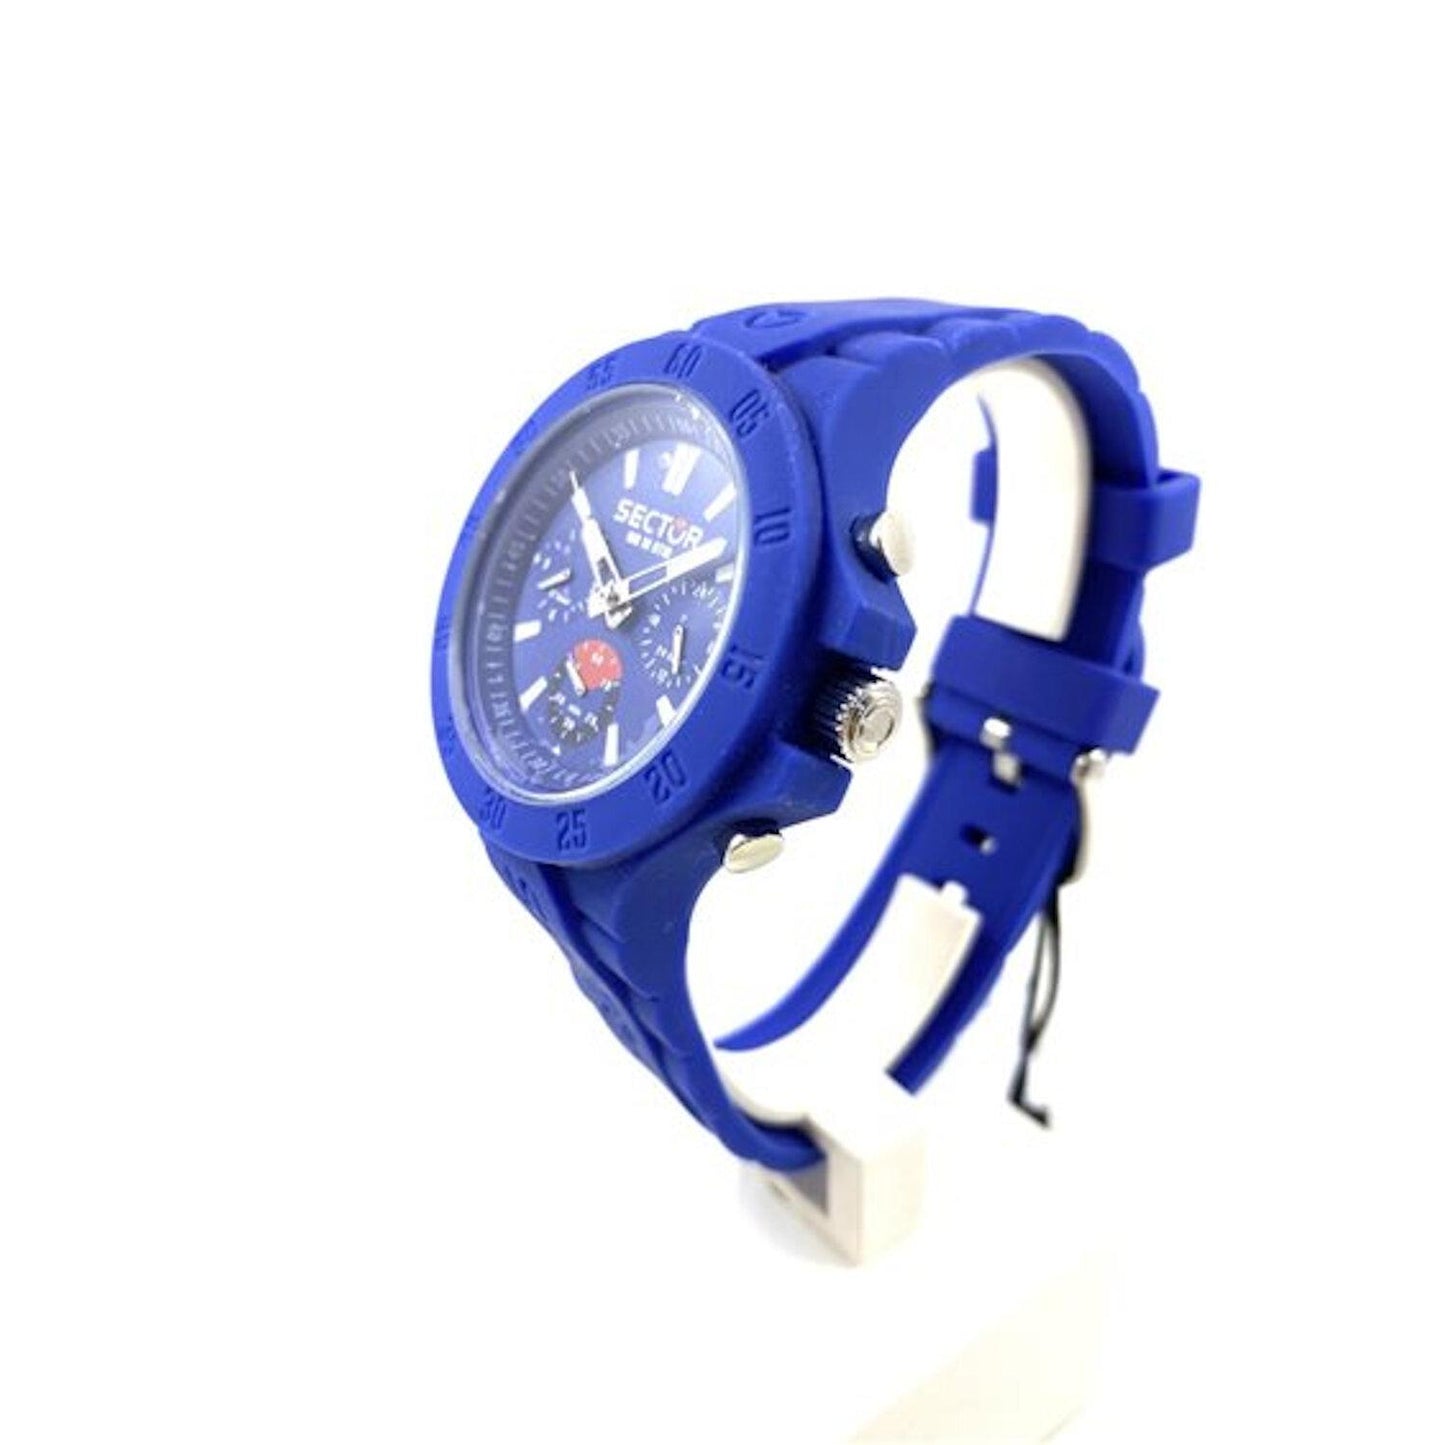 Reloj SECTOR R3251586002 Steeltouch Cronógrafo-Azul